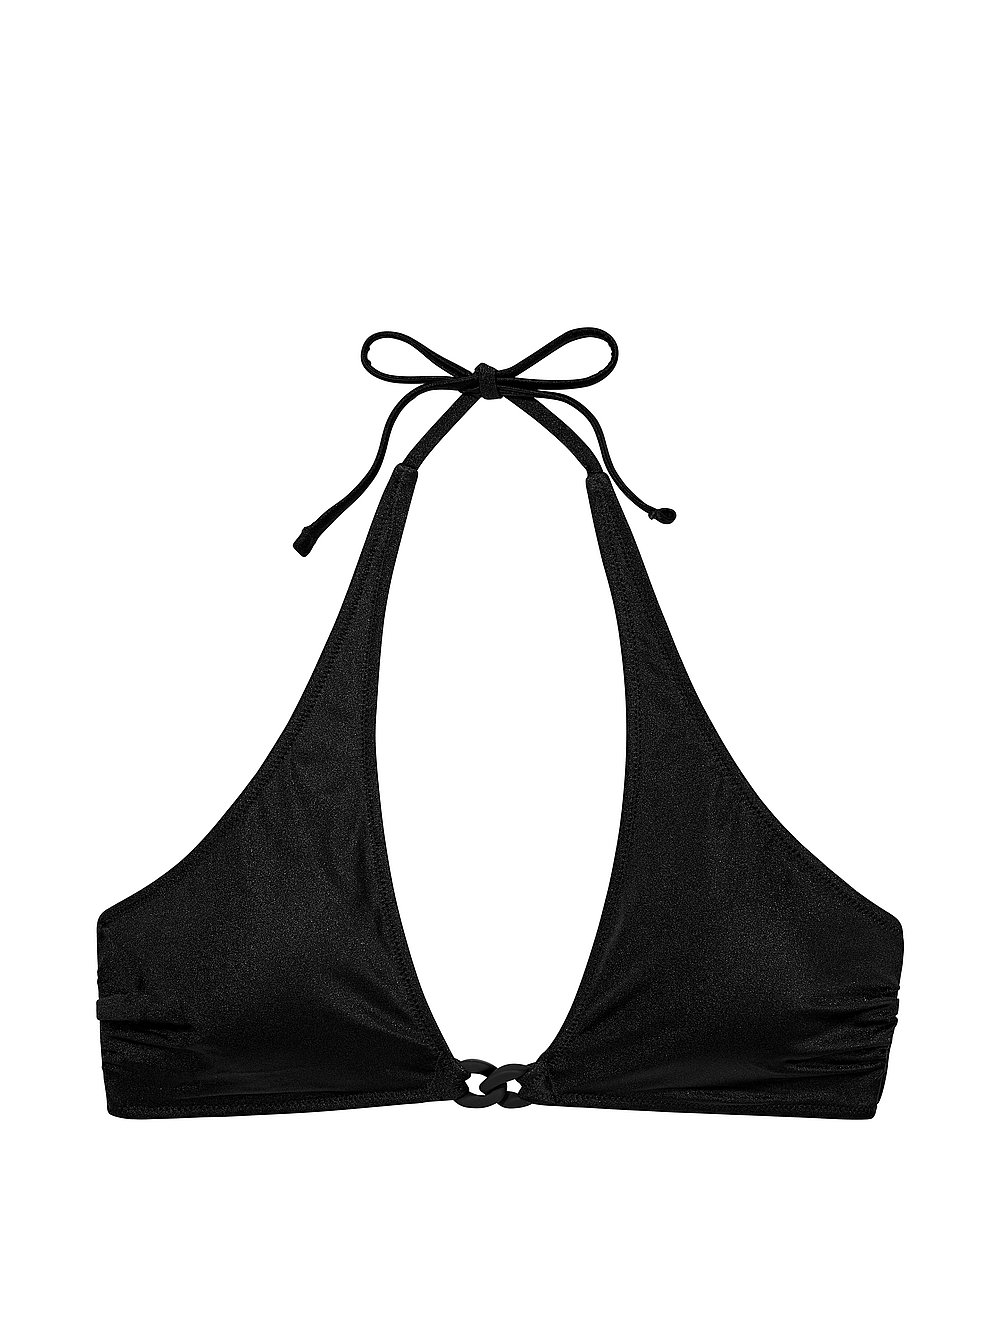 New Style! Chain-Link Bralette Bikini Top Victoria's Secret Swim